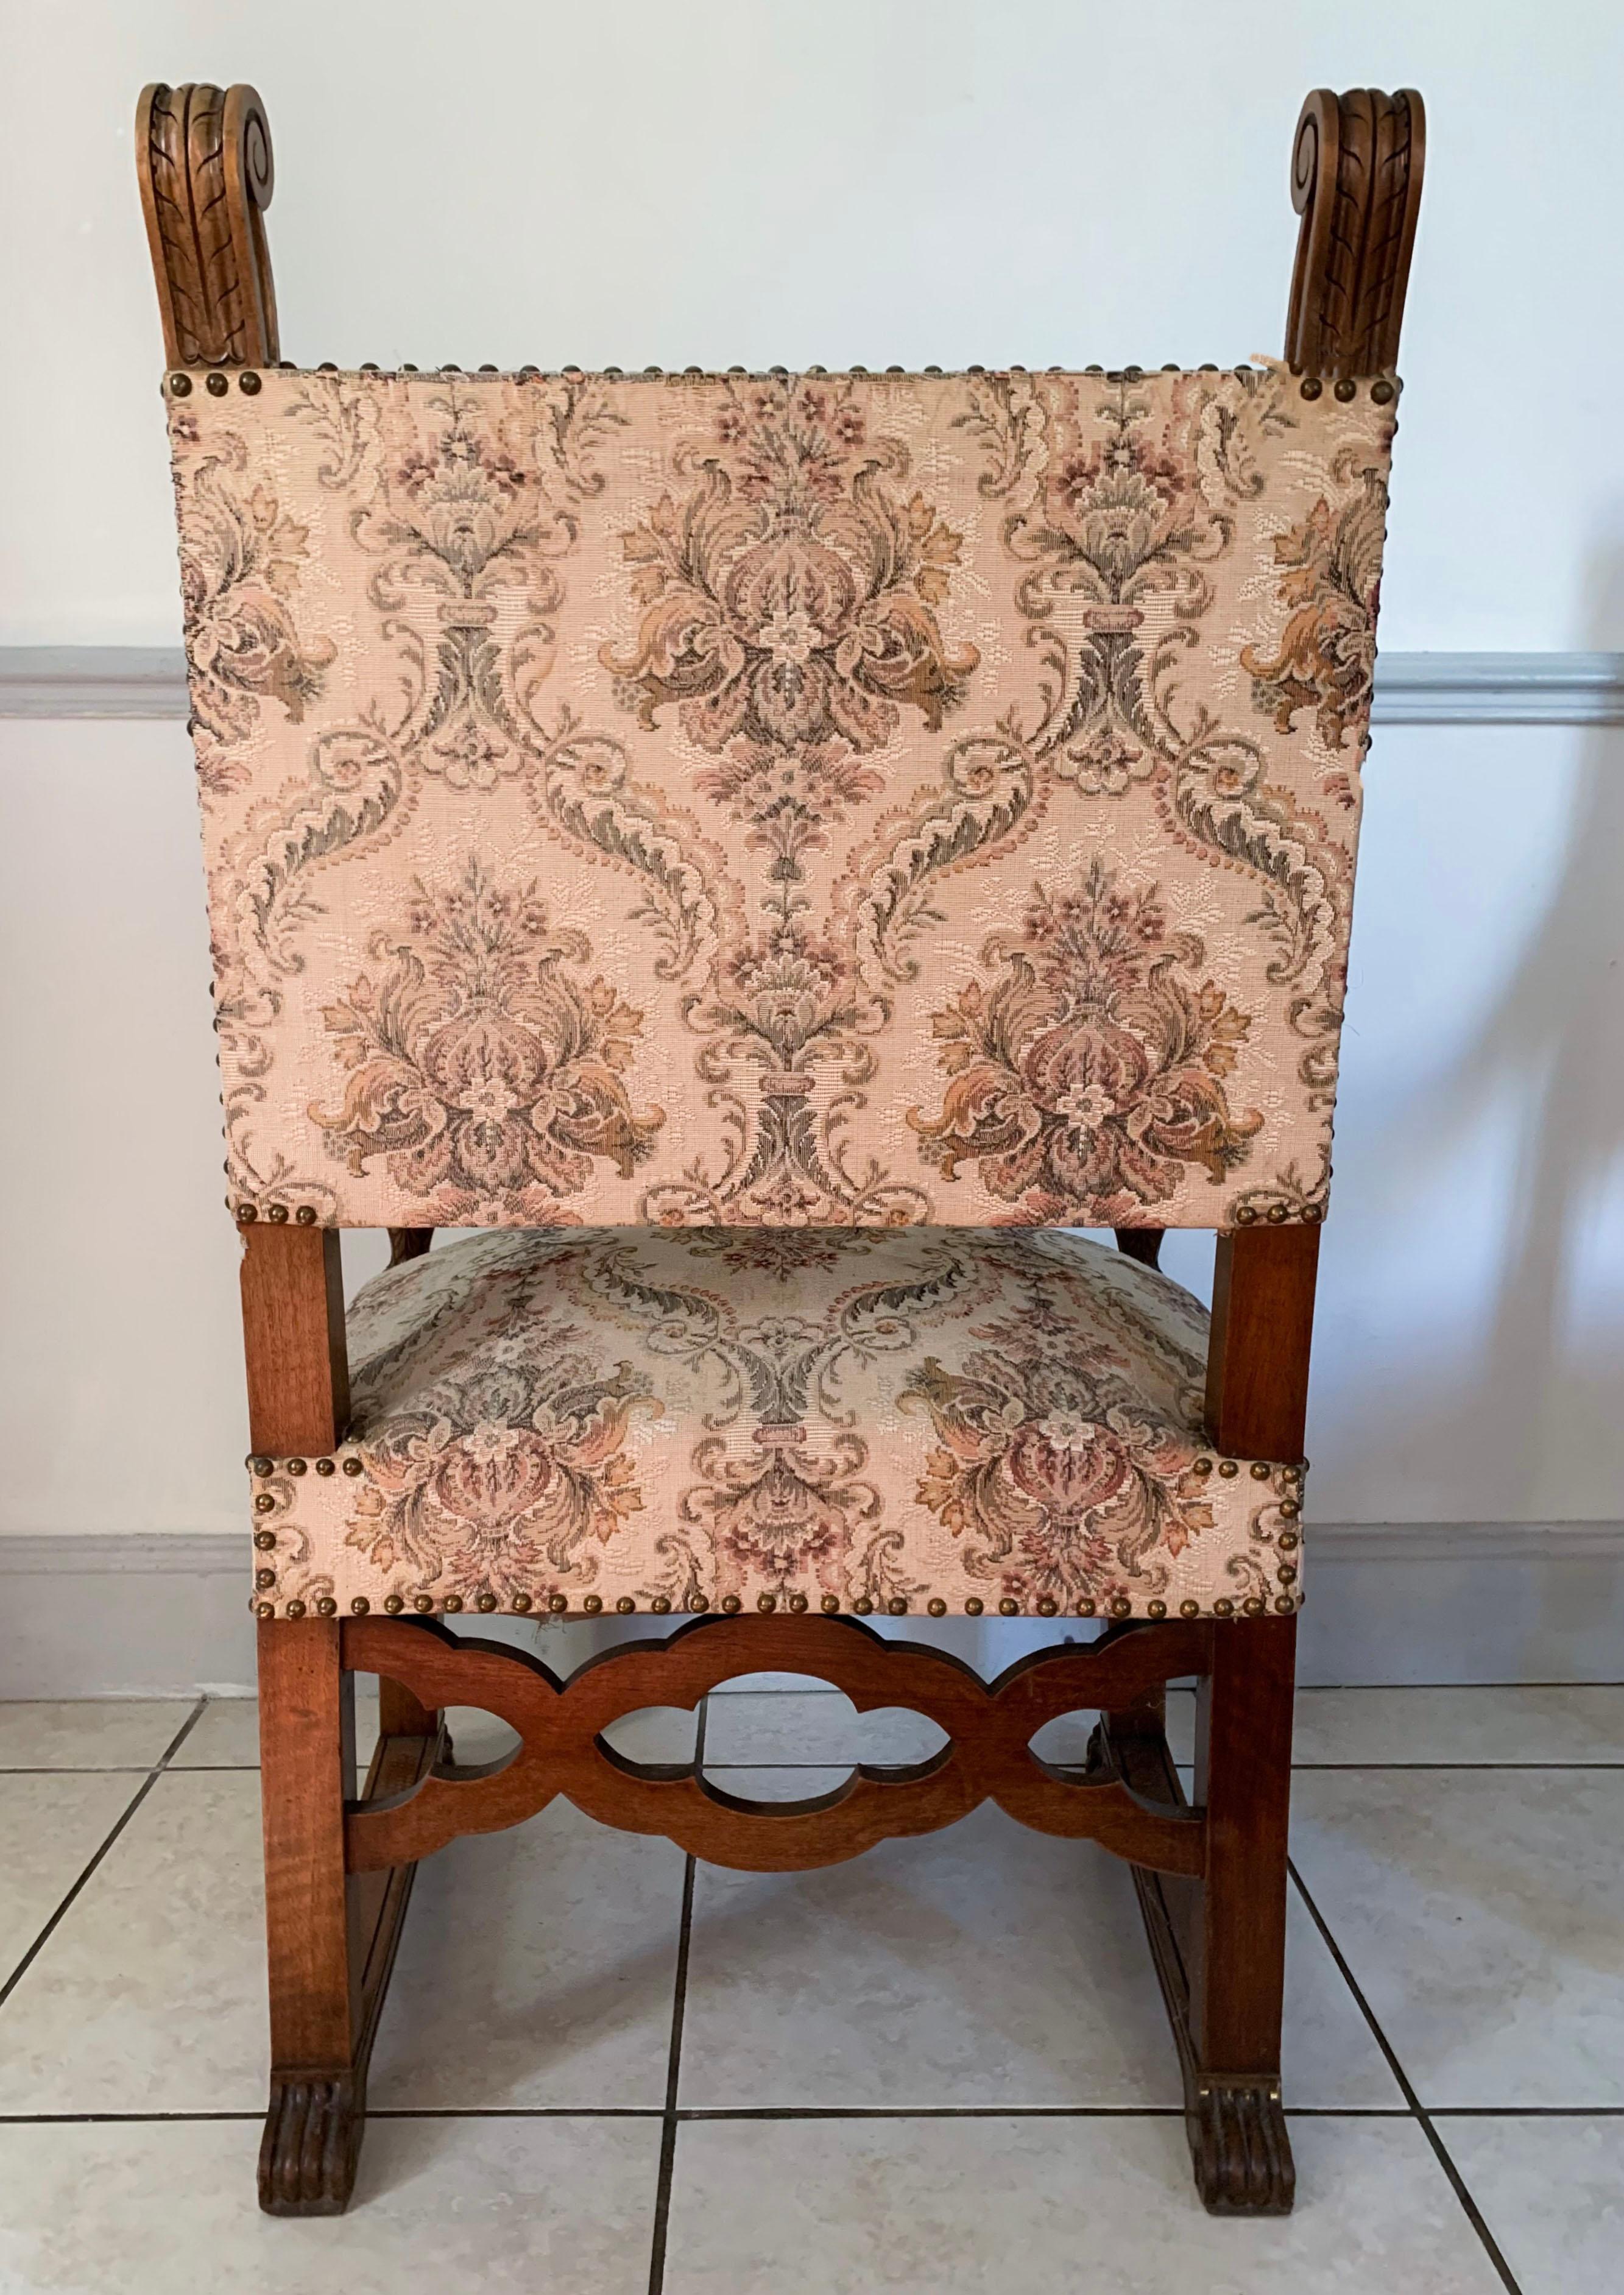 Charmante paire de fauteuils de style néo-renaissance datant de la fin du 19ème siècle. La base est dite en patte de lion pour les pattes avant. La traverse reliant les pieds est composée d'une frise d'ovales quadrilobés décorés de fleurs. Les